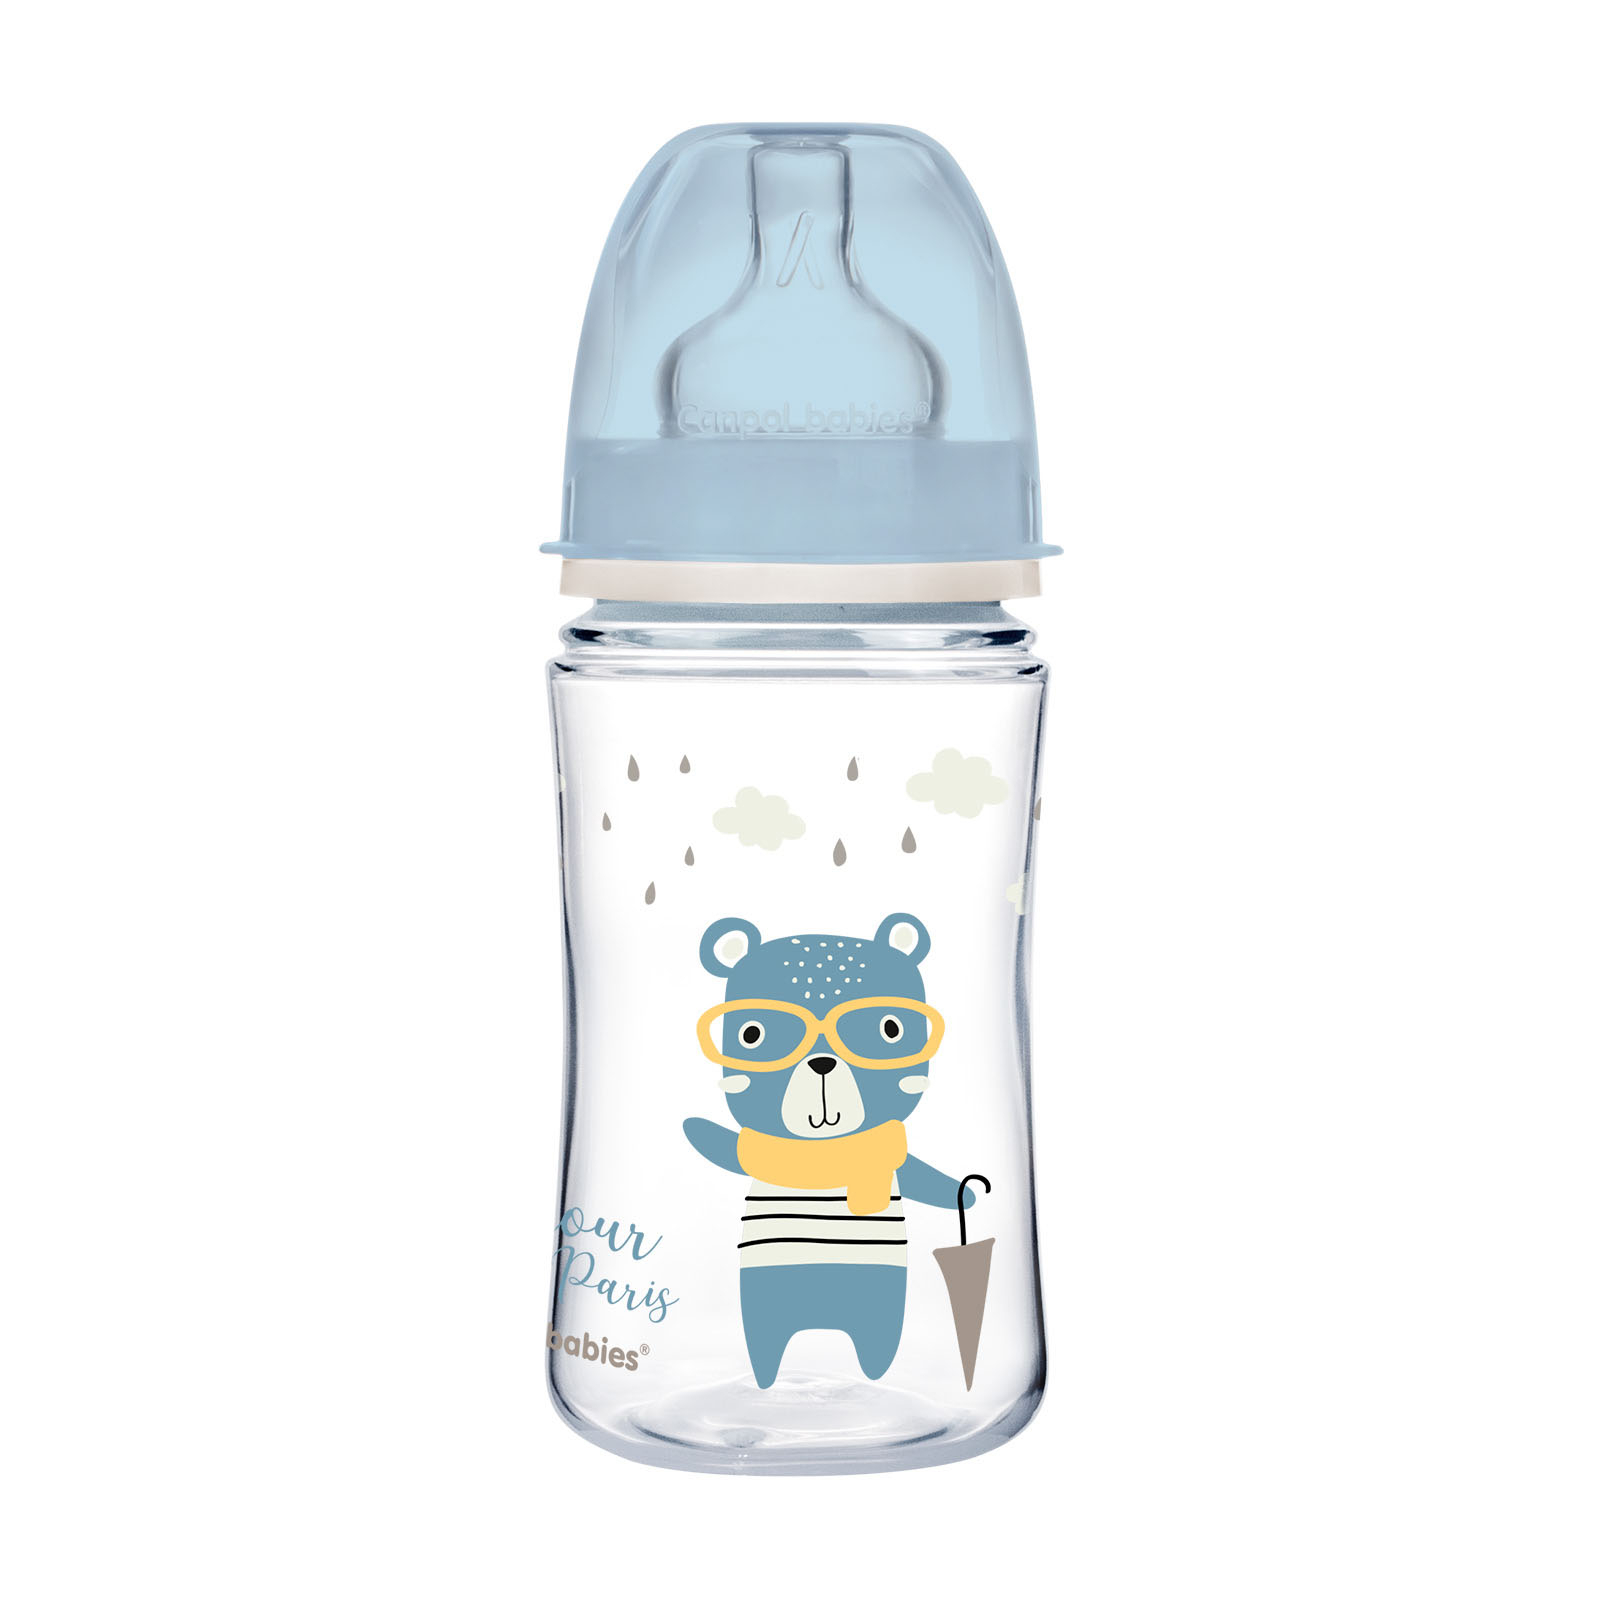 Бутылочка для кормления Canpol babies Bonjour Paris с широким отверстием 240 мл Синяя (35/232_blu)